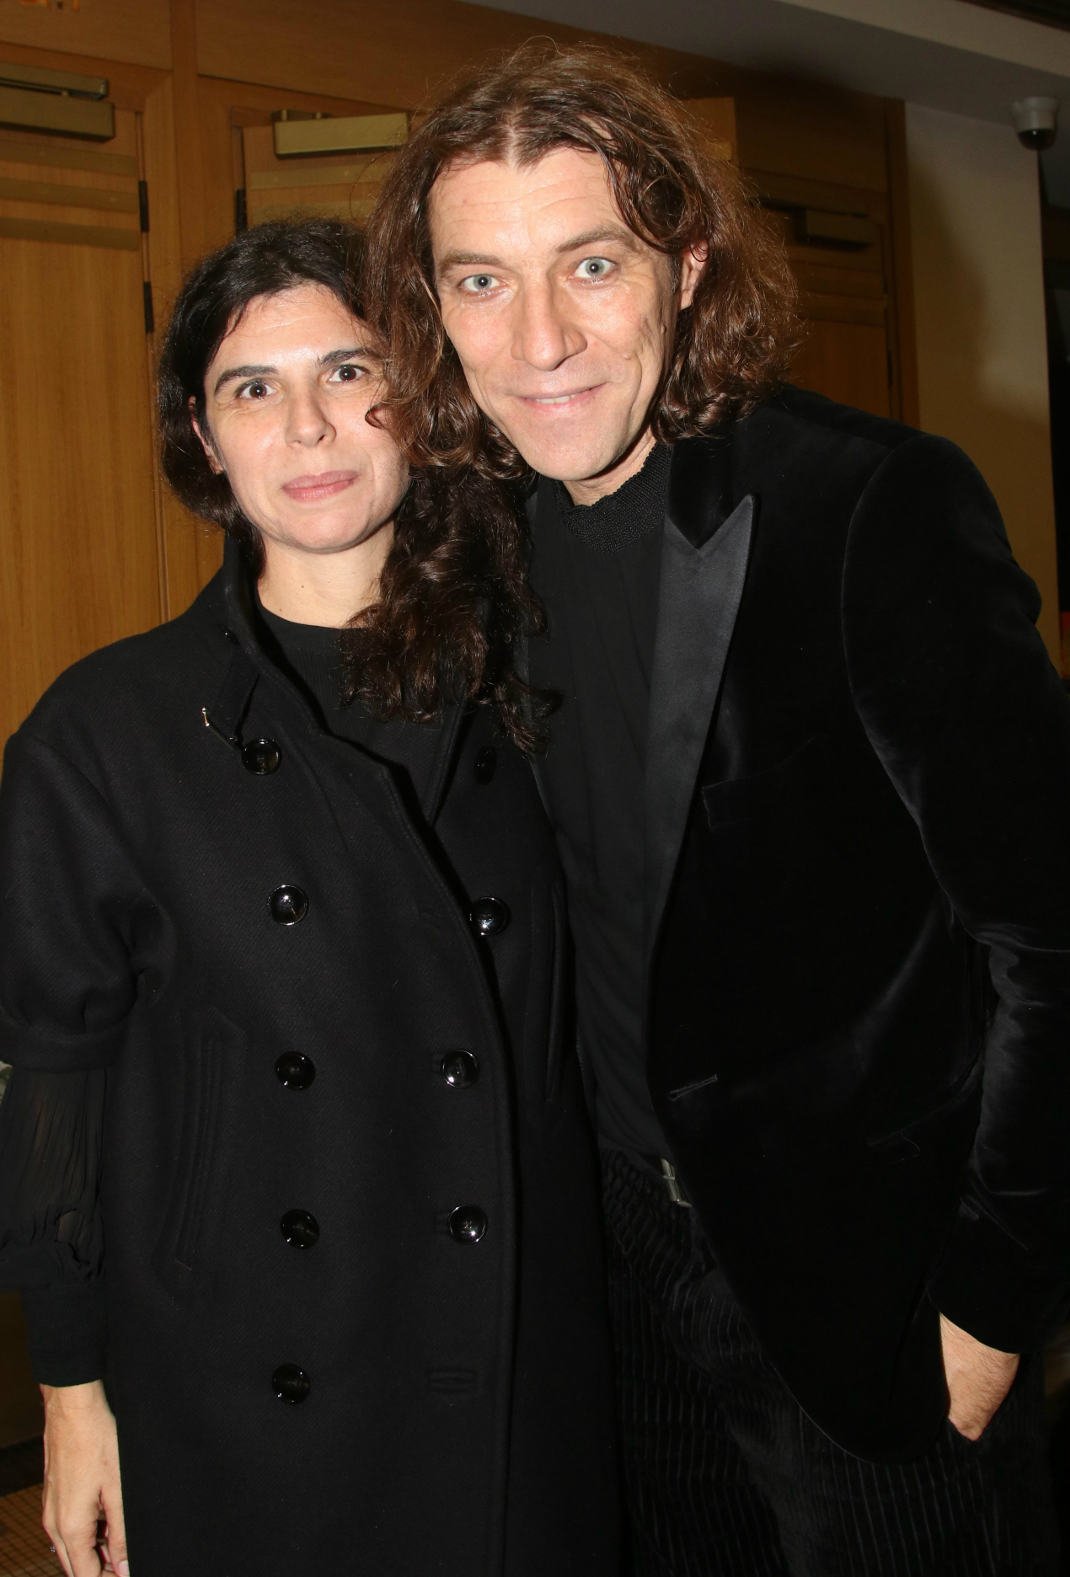 Ο Γιάννης Στάνκογλου με τη σύζυγό του- NDP Photo Agency 